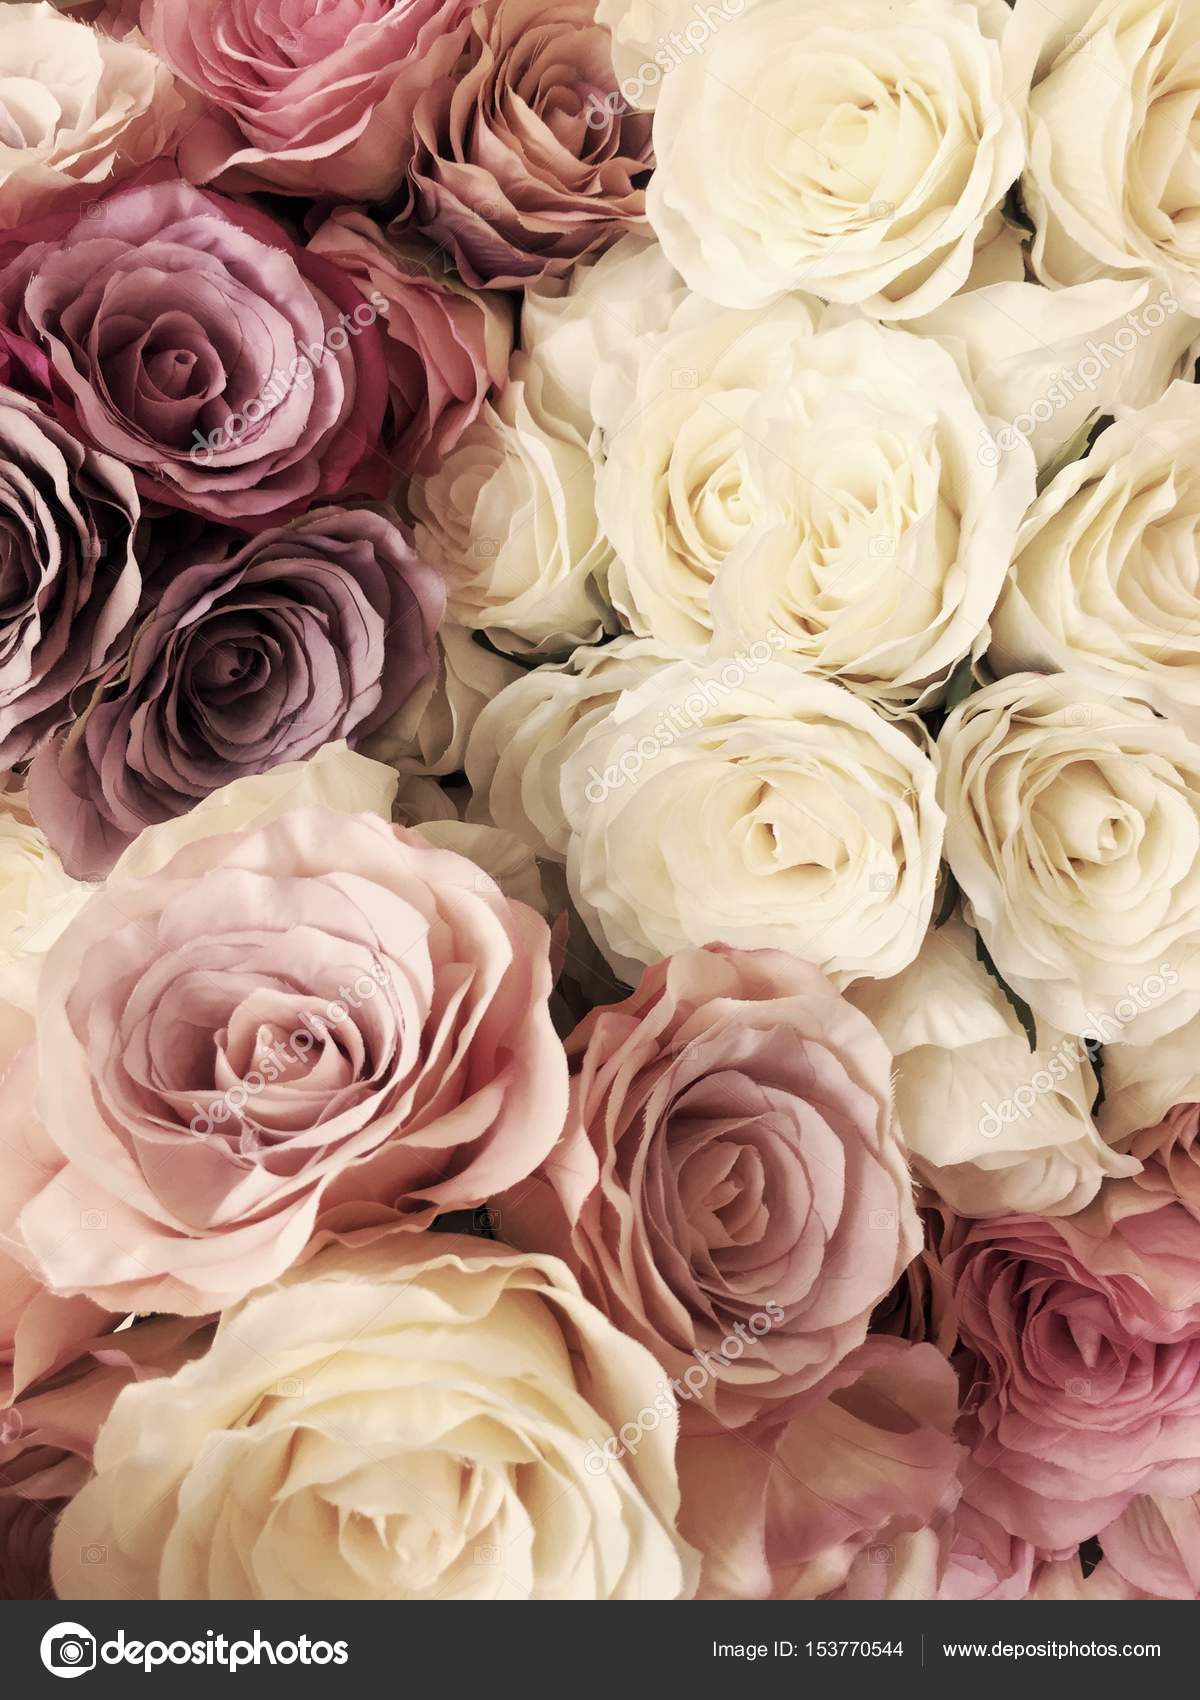 Hình nền hoa hồng cổ điển đẹp lung linh, chắc chắn sẽ làm bạn say đắm ngay từ cái nhìn đầu tiên. Hãy đến với bức ảnh liên quan đến từ khoá này để khám phá thêm vẻ đẹp tuyệt vời mà chúng mang lại.